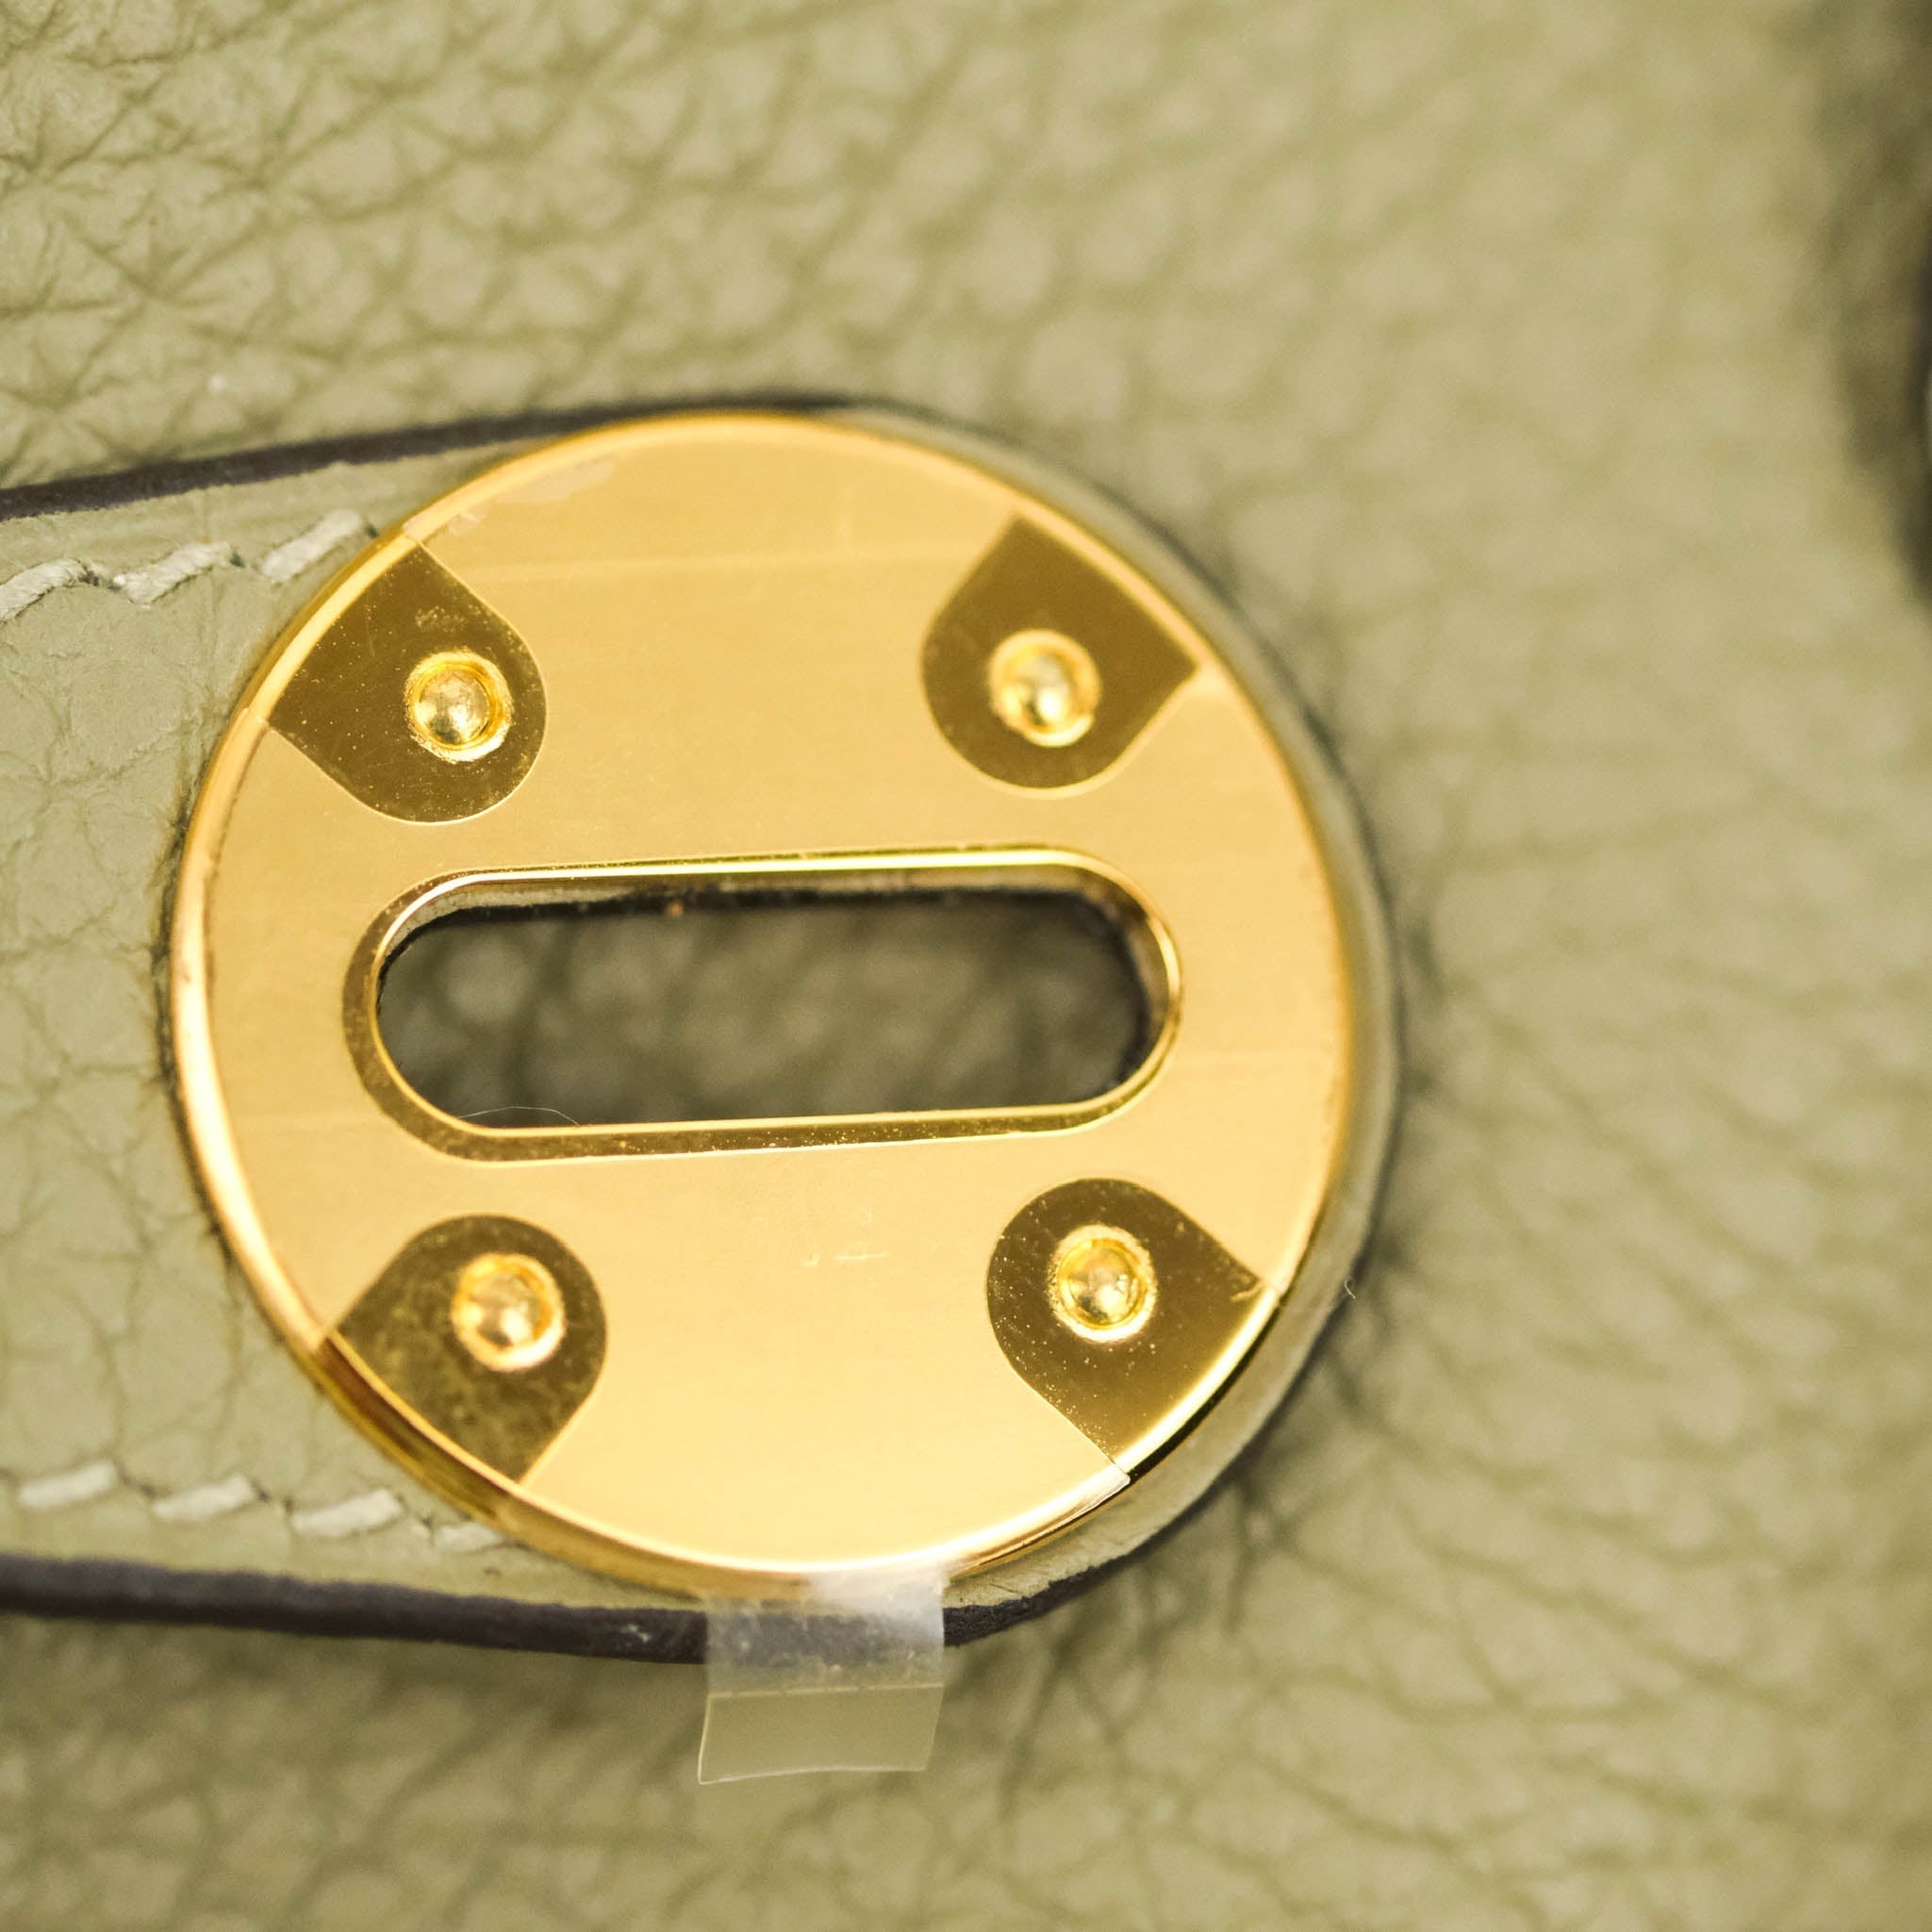 Hermès Lindy 26cm Clemence Etoupe 18 Gold Hardware – SukiLux